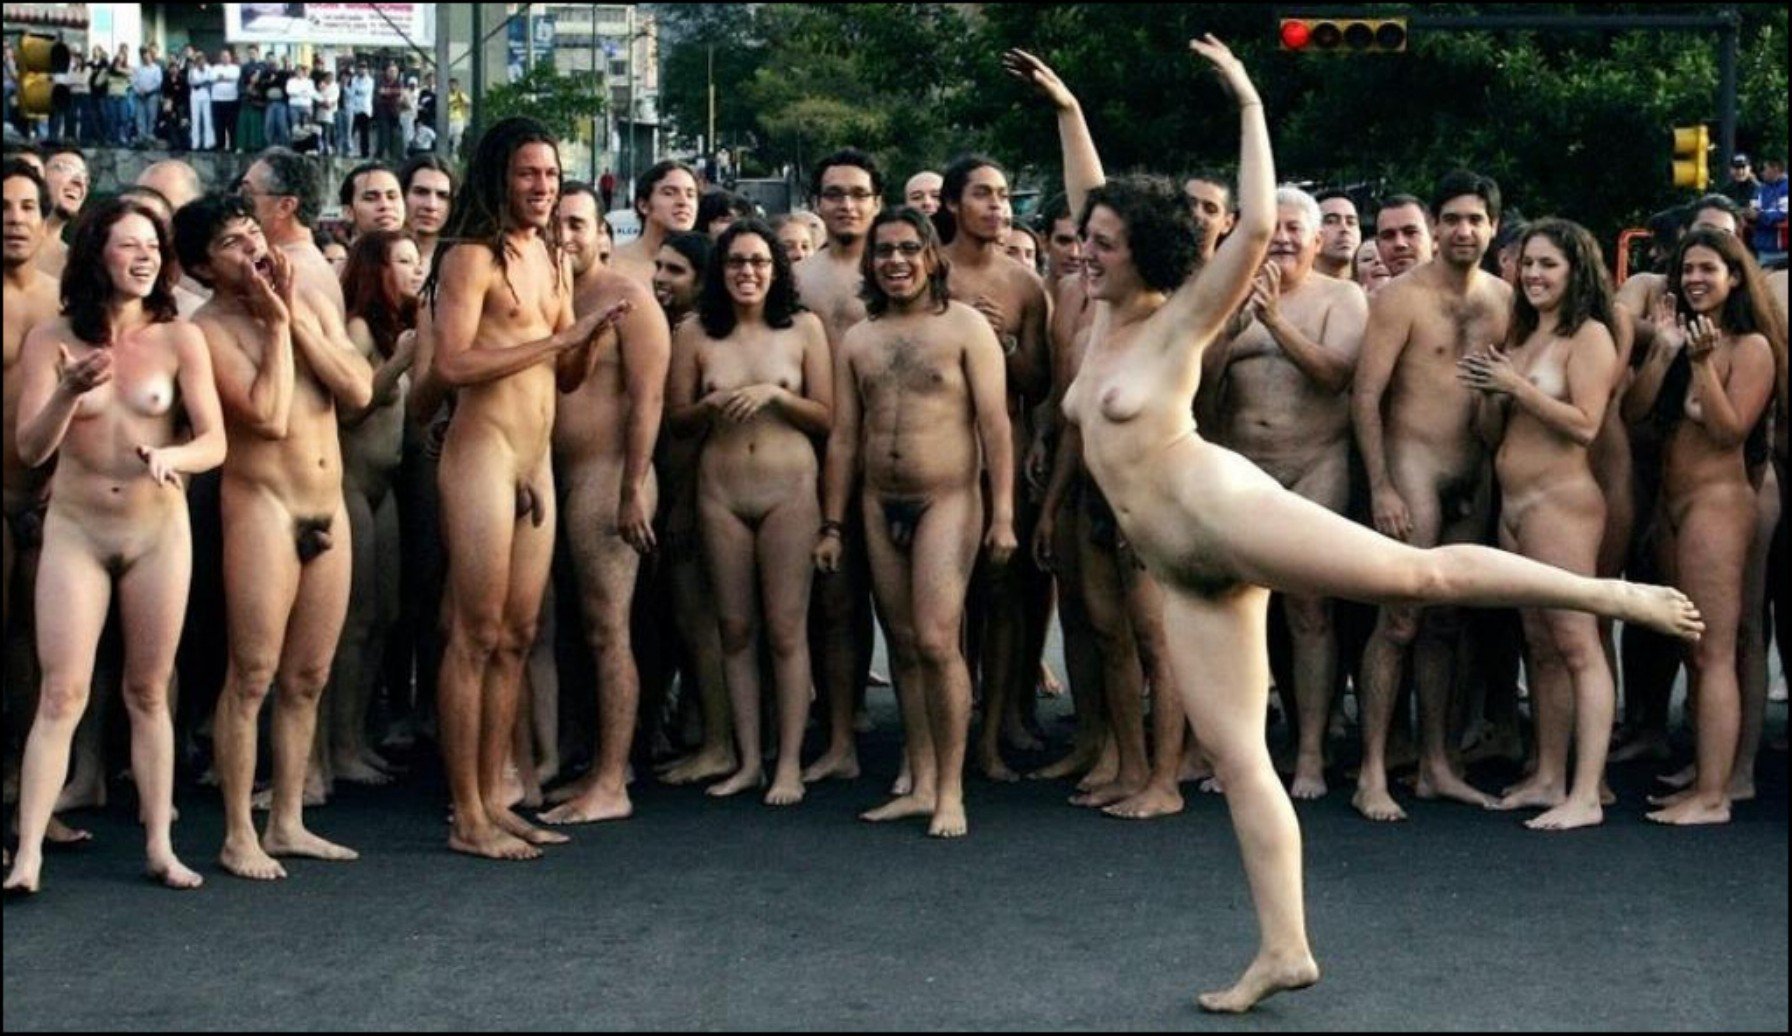 Israeli women nude images